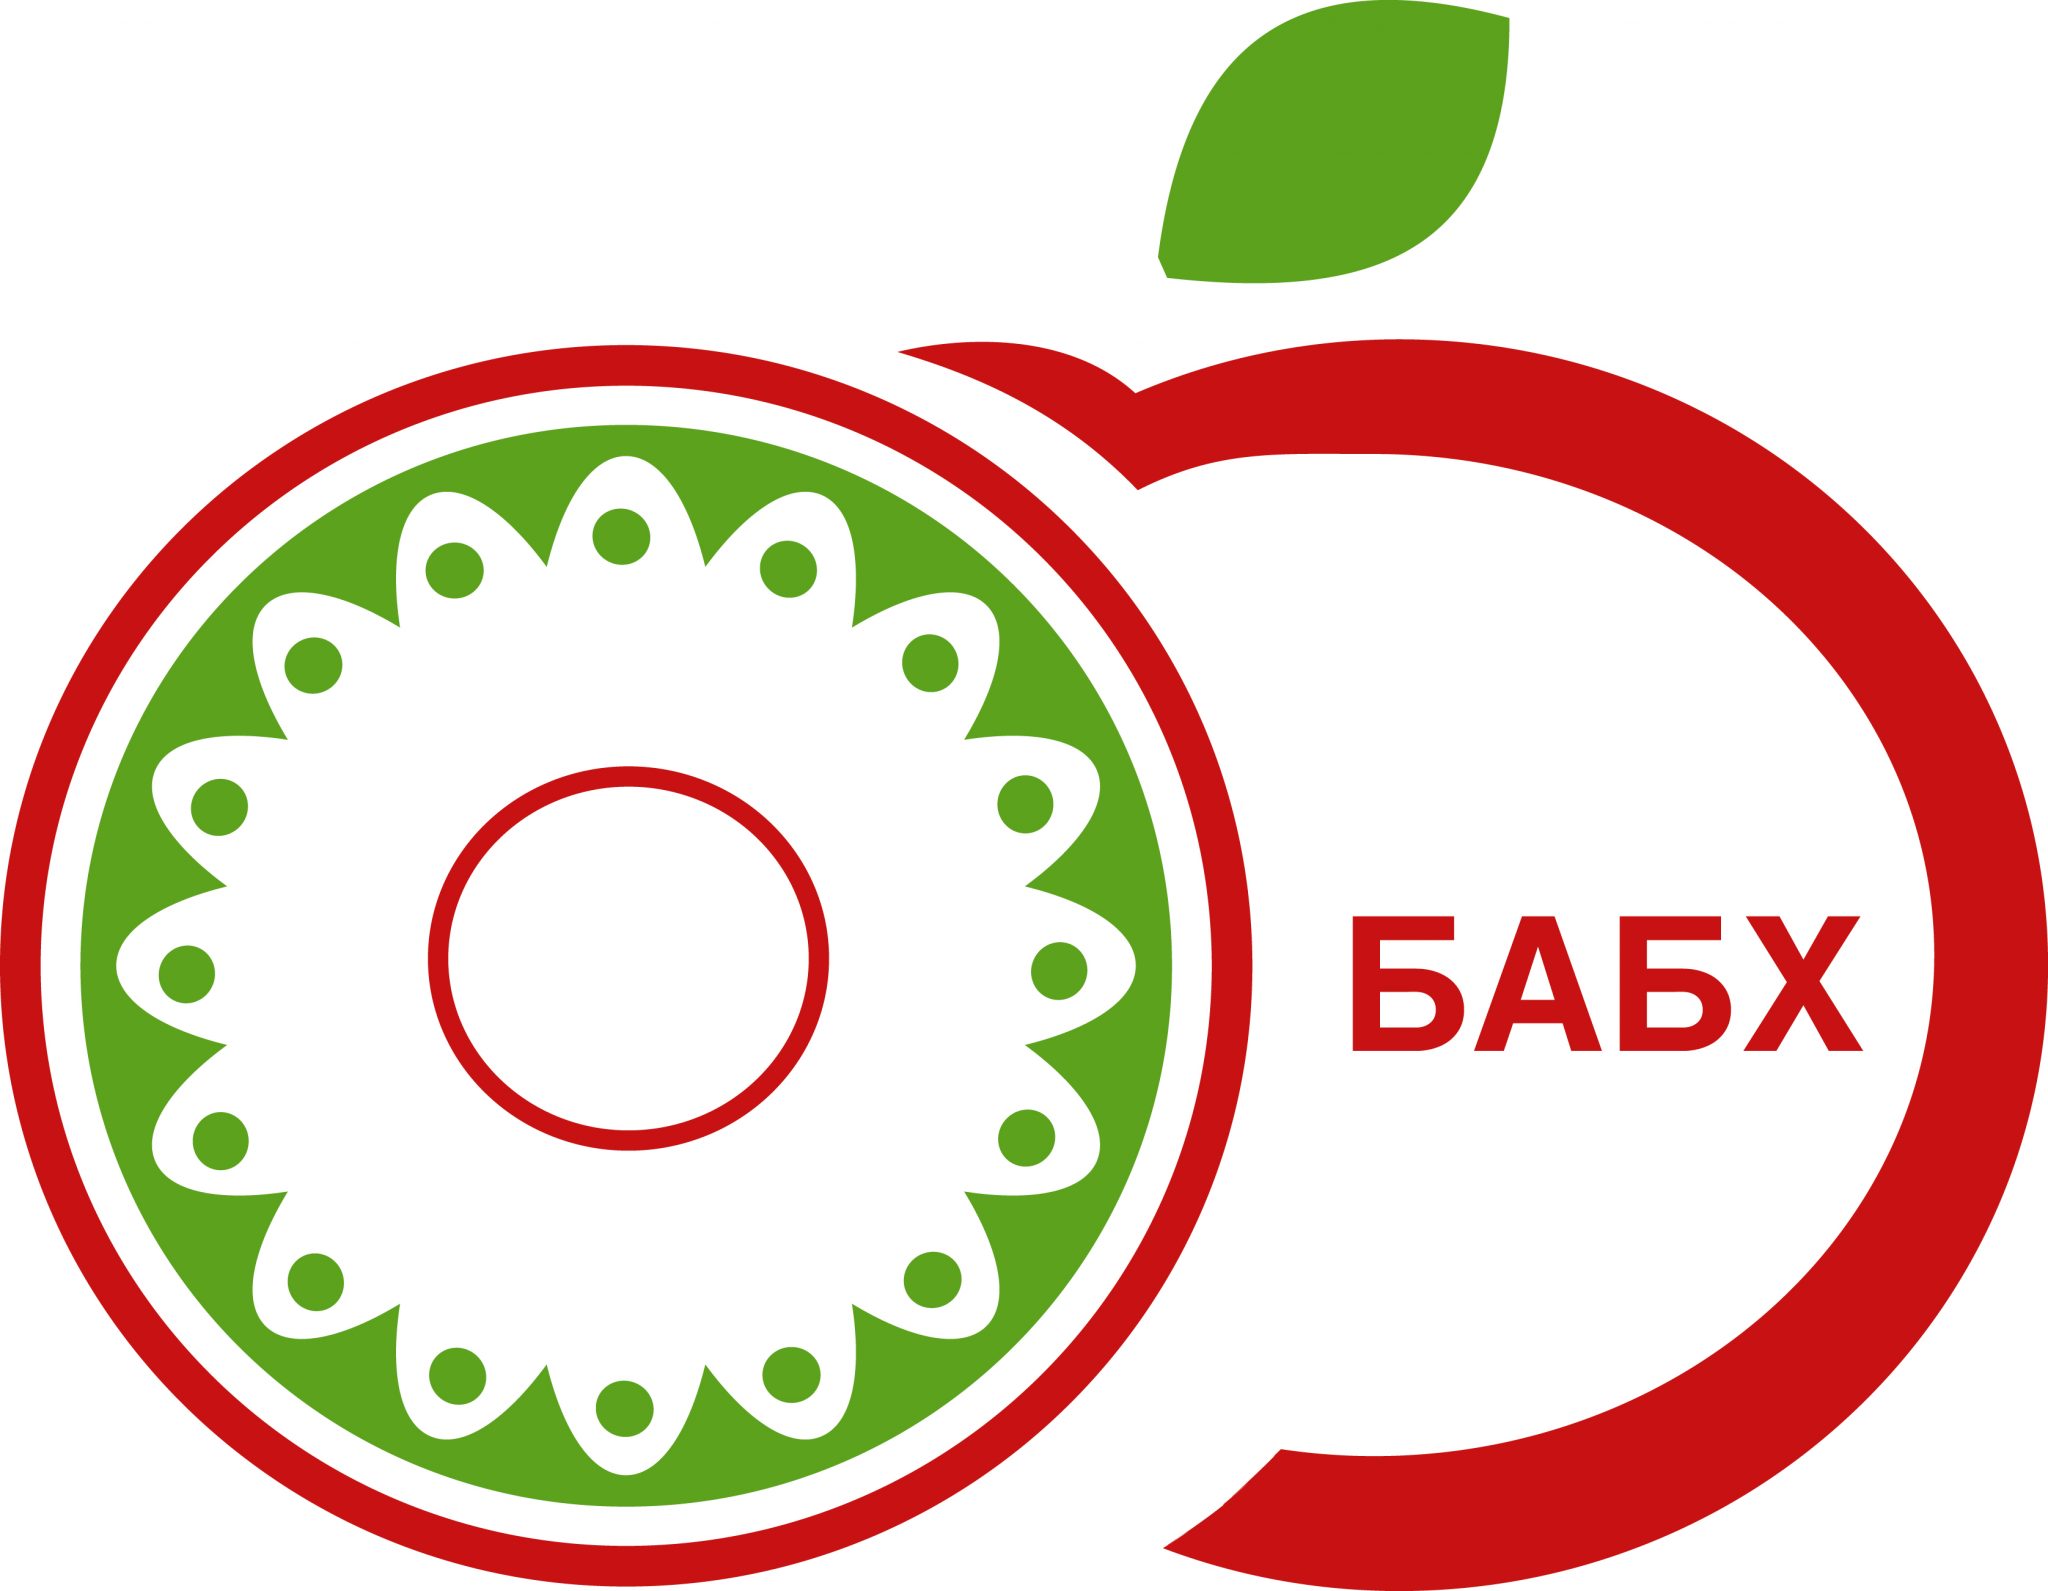 Изпълнителният директор на Българската агенция по безопасност на храните БАБХ